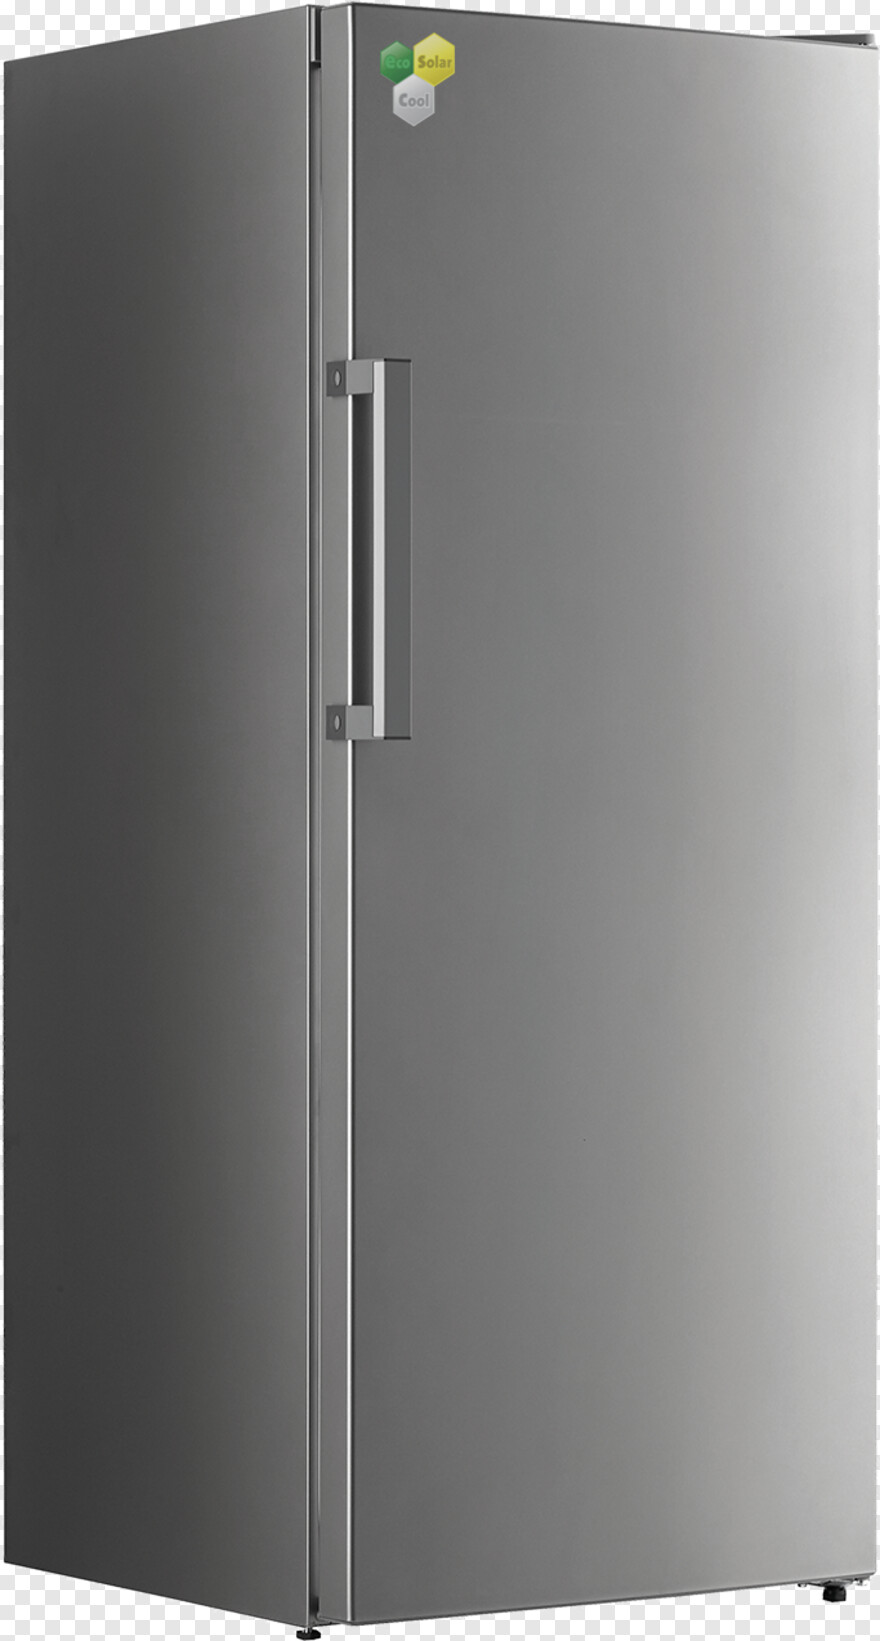 refrigerator # 783171